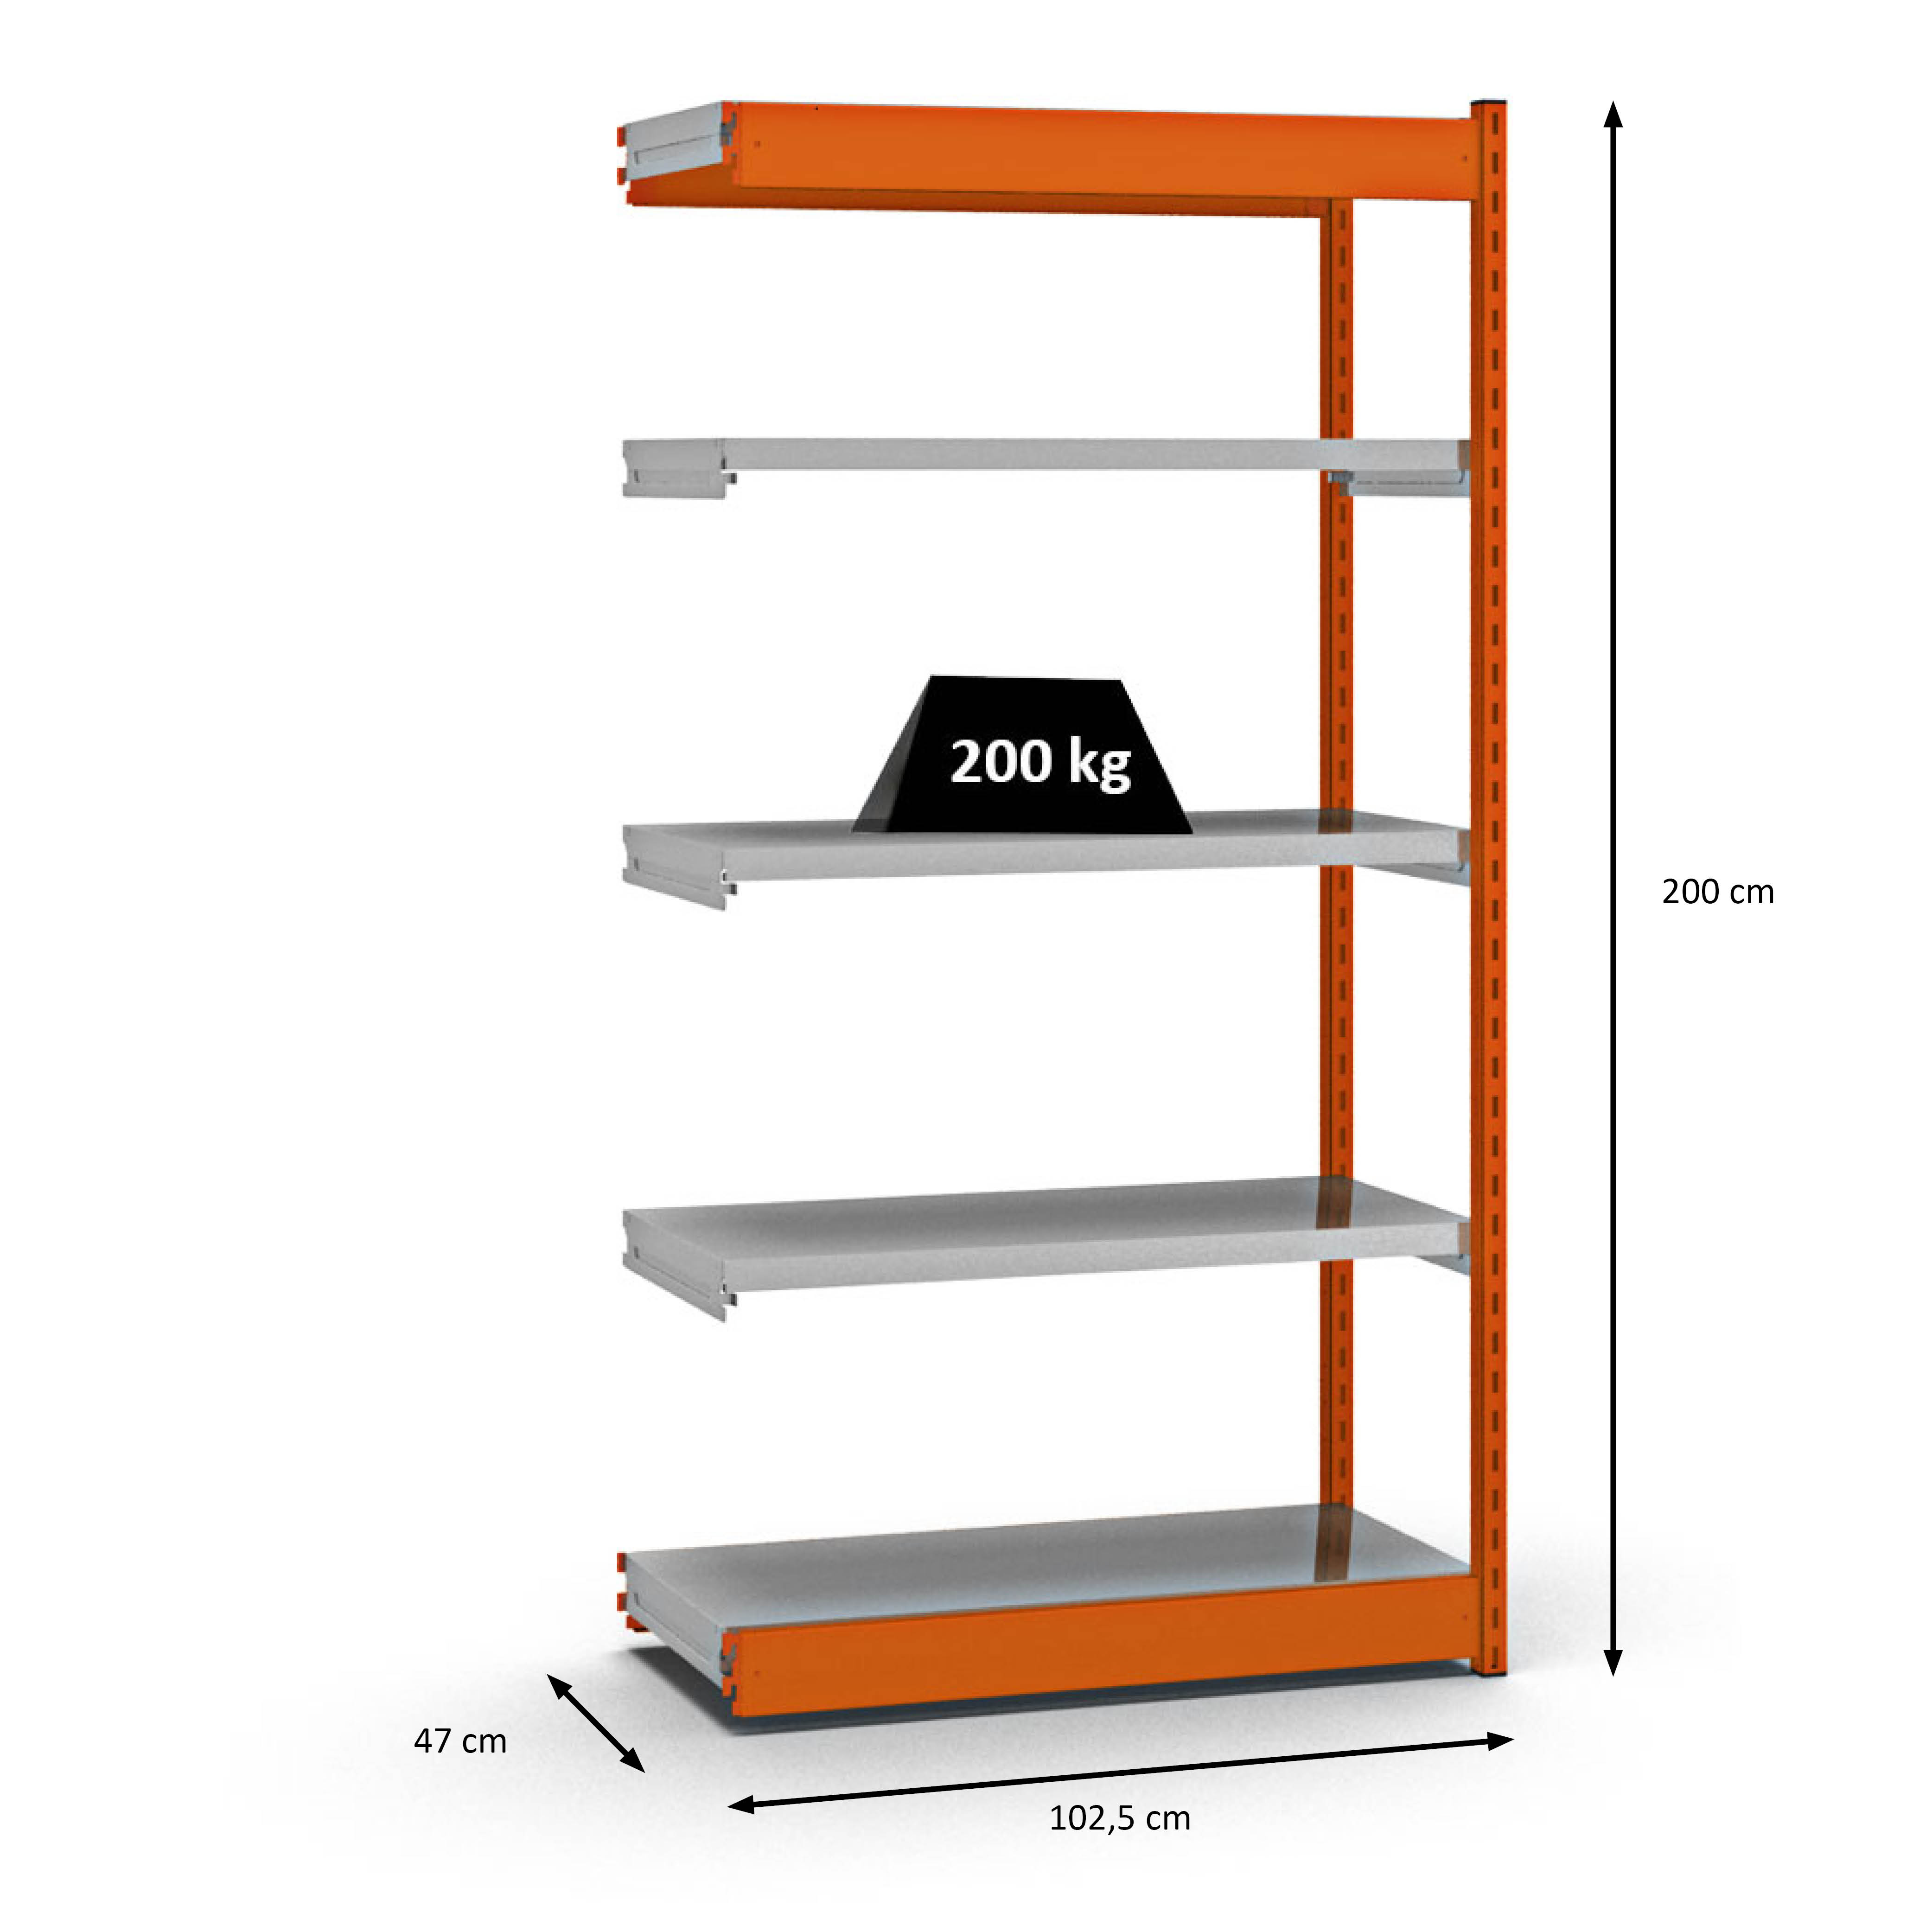 Fachbodenregal Stecksystem Vierkant-Profil | Anbauregal | HxBxT 200x100x40cm | 5 Ebenen | Einseitige Bauart | Fachlast 200kg | Orange/Verzinkt